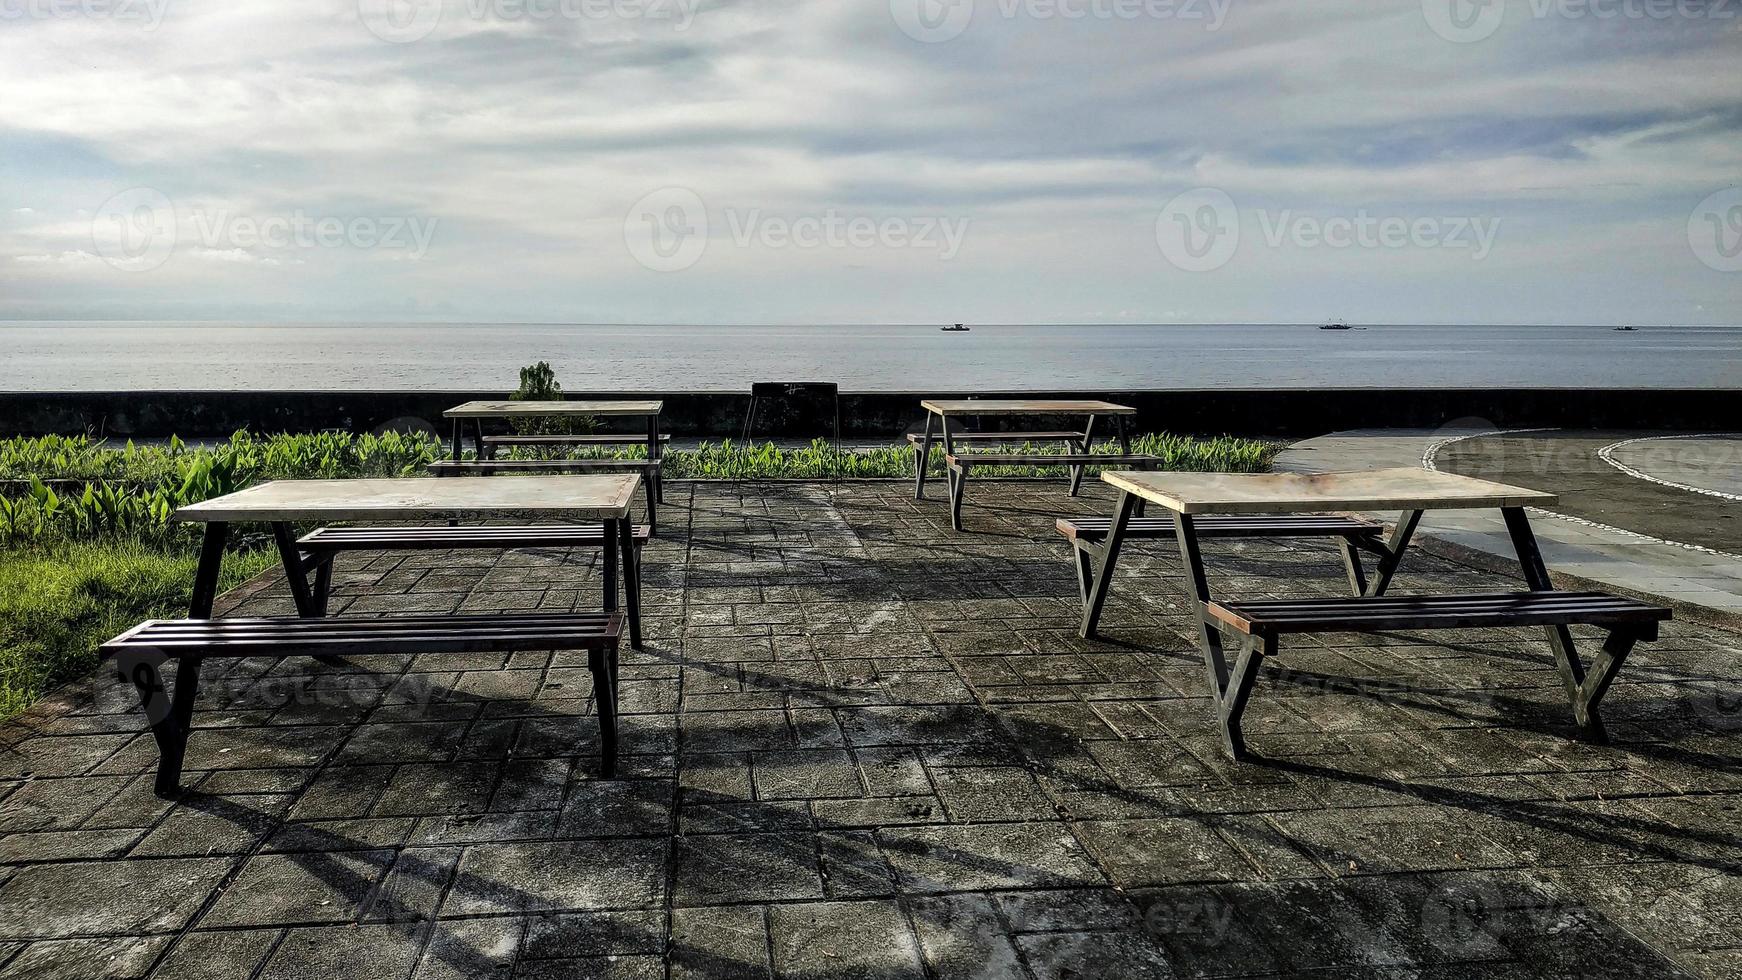 fileiras de cadeiras e mesas minimalistas para relaxar curtindo a praia em anjungan vovasanggayu na regência de pasangkayu, indonésia com fundo do mar foto